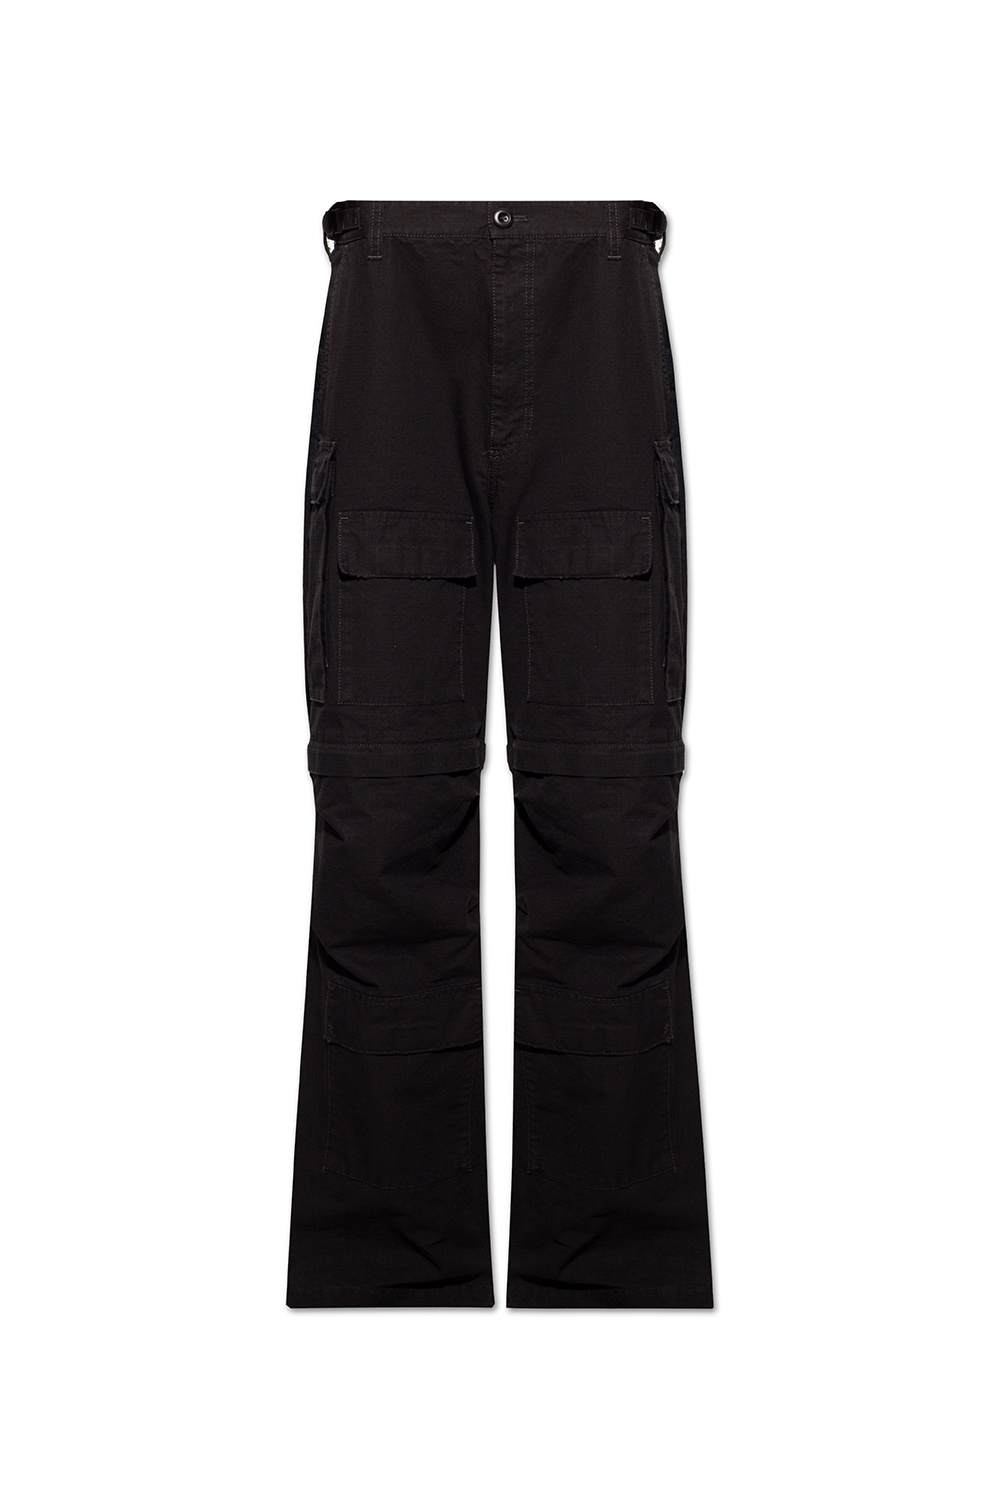 Balenciaga Cargo body trousers